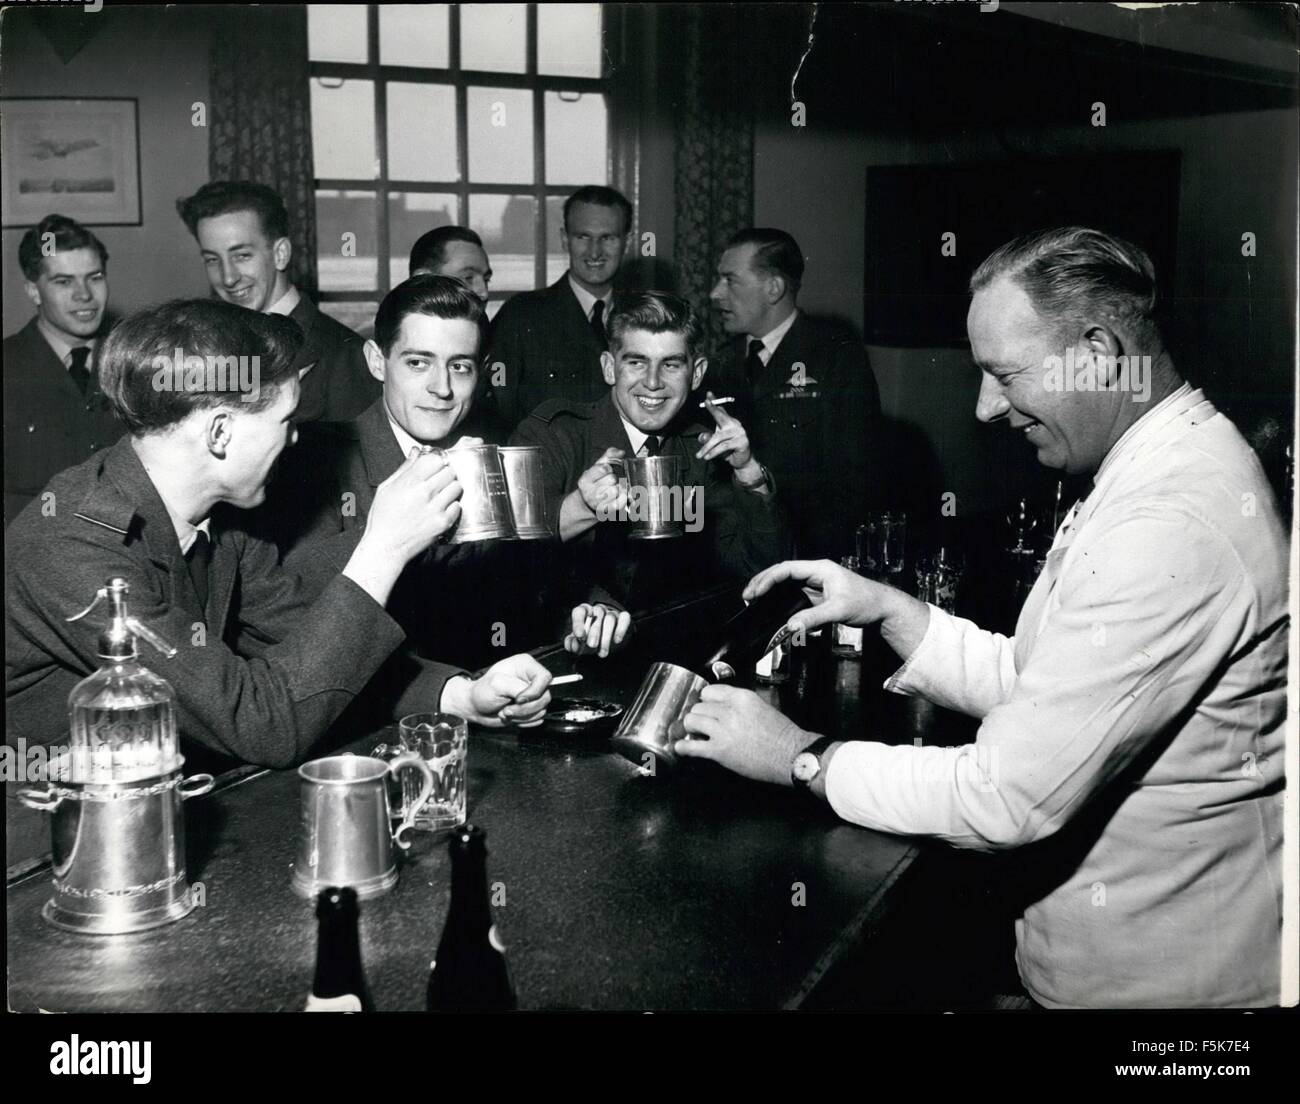 1962 - La formation des équipes de Canberra : Après le vol, les étudiants sortent de leur foregather Trousse de vol et au bar pour une bière bien méritée et chat - et vous avez parié le sujet est unique ! (Crédit Image : © Keystone Photos USA/ZUMAPRESS.com) Banque D'Images